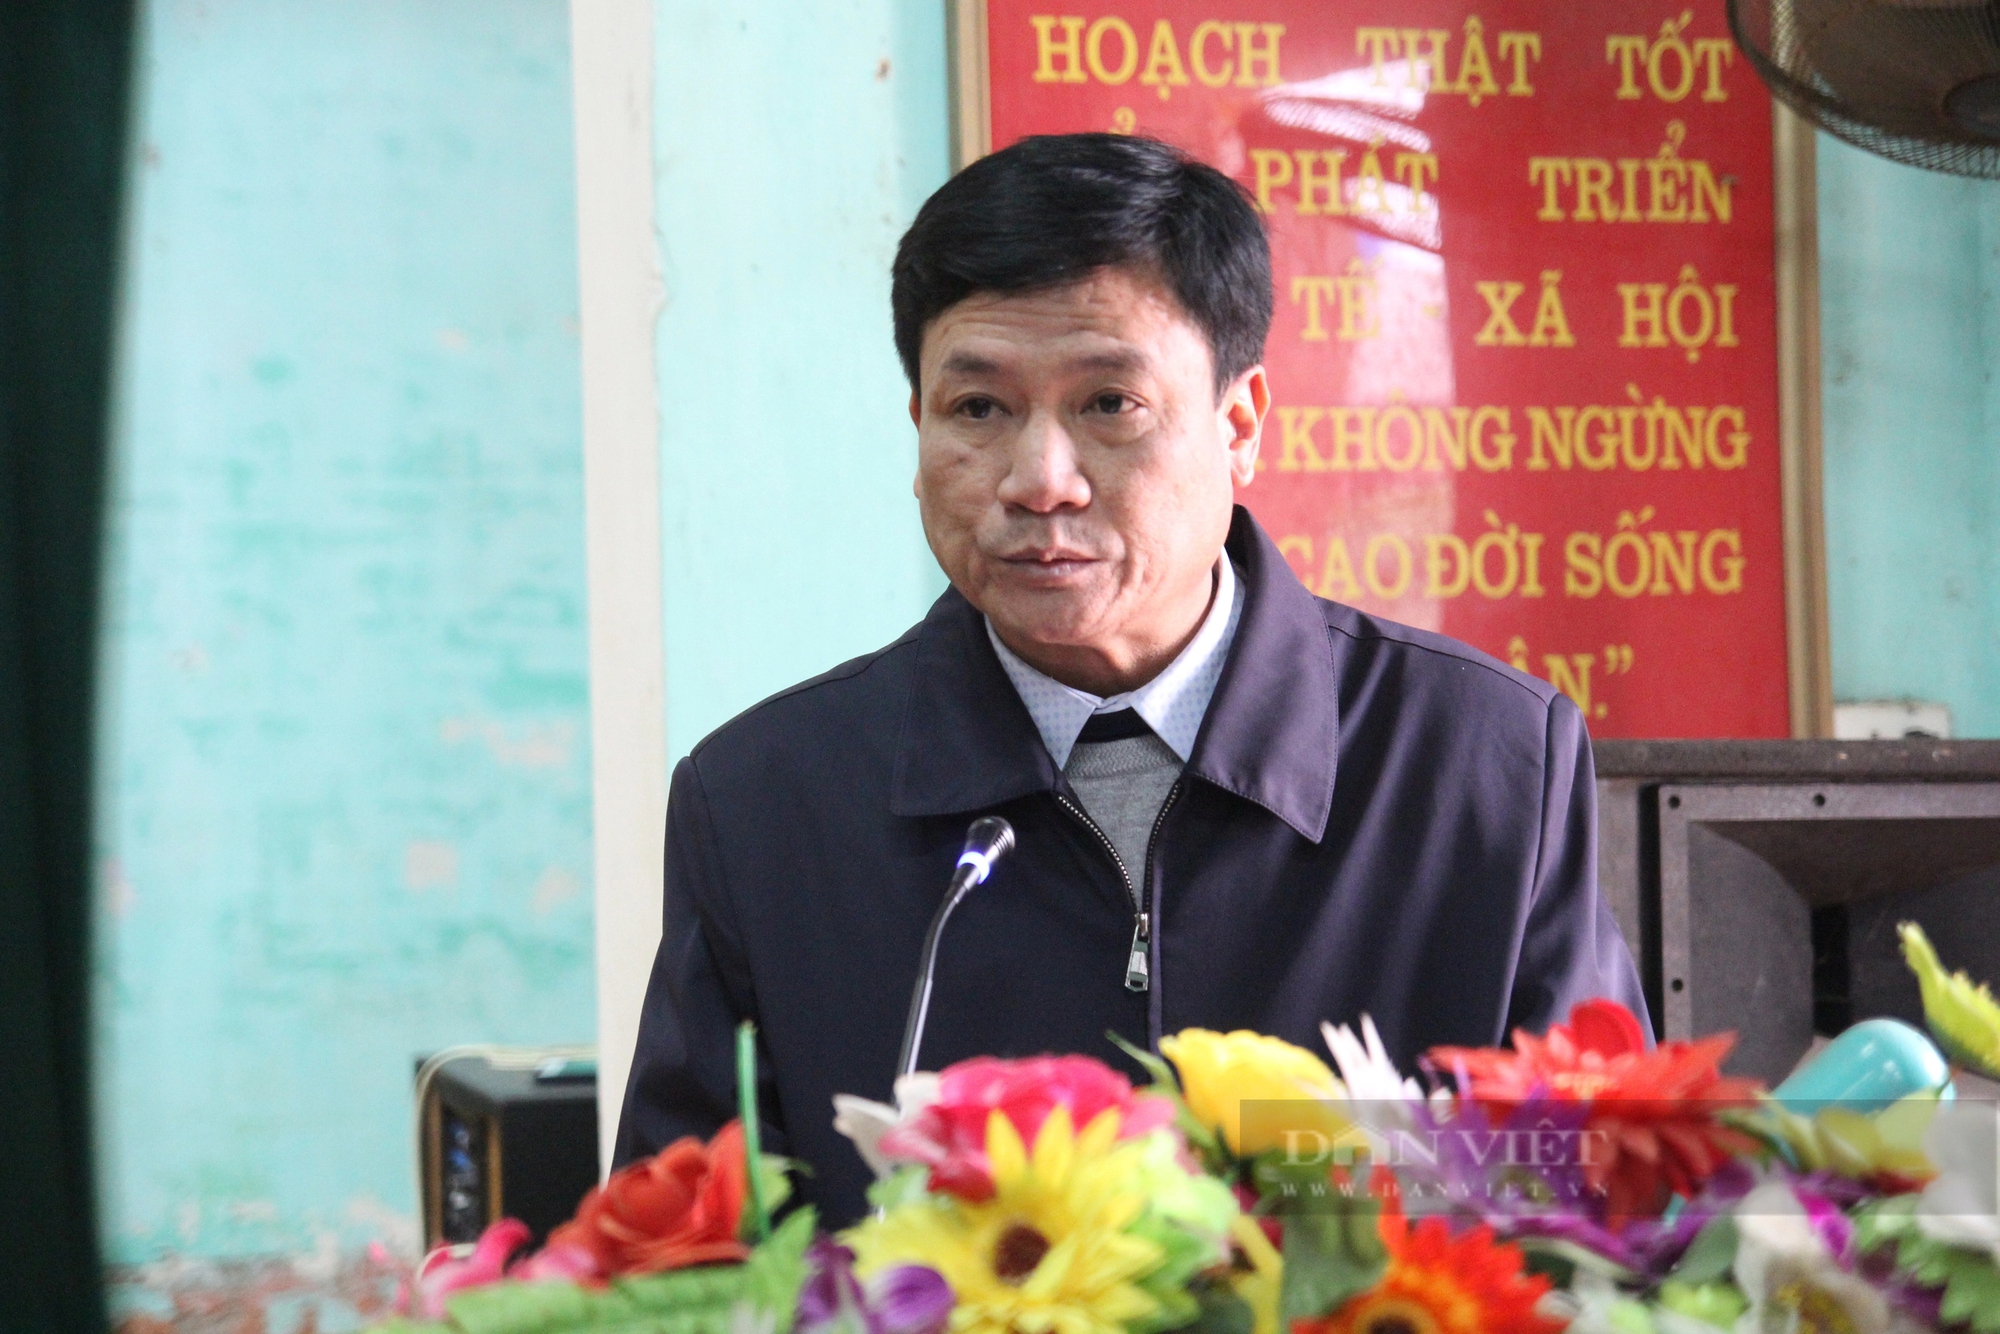 Phó Chủ tịch TƯ Hội NDVN Nguyễn Xuân Định thăm, tặng quà Tết hội viên, nông dân có hoàn cảnh khó khăn ở Thái Bình- Ảnh 3.